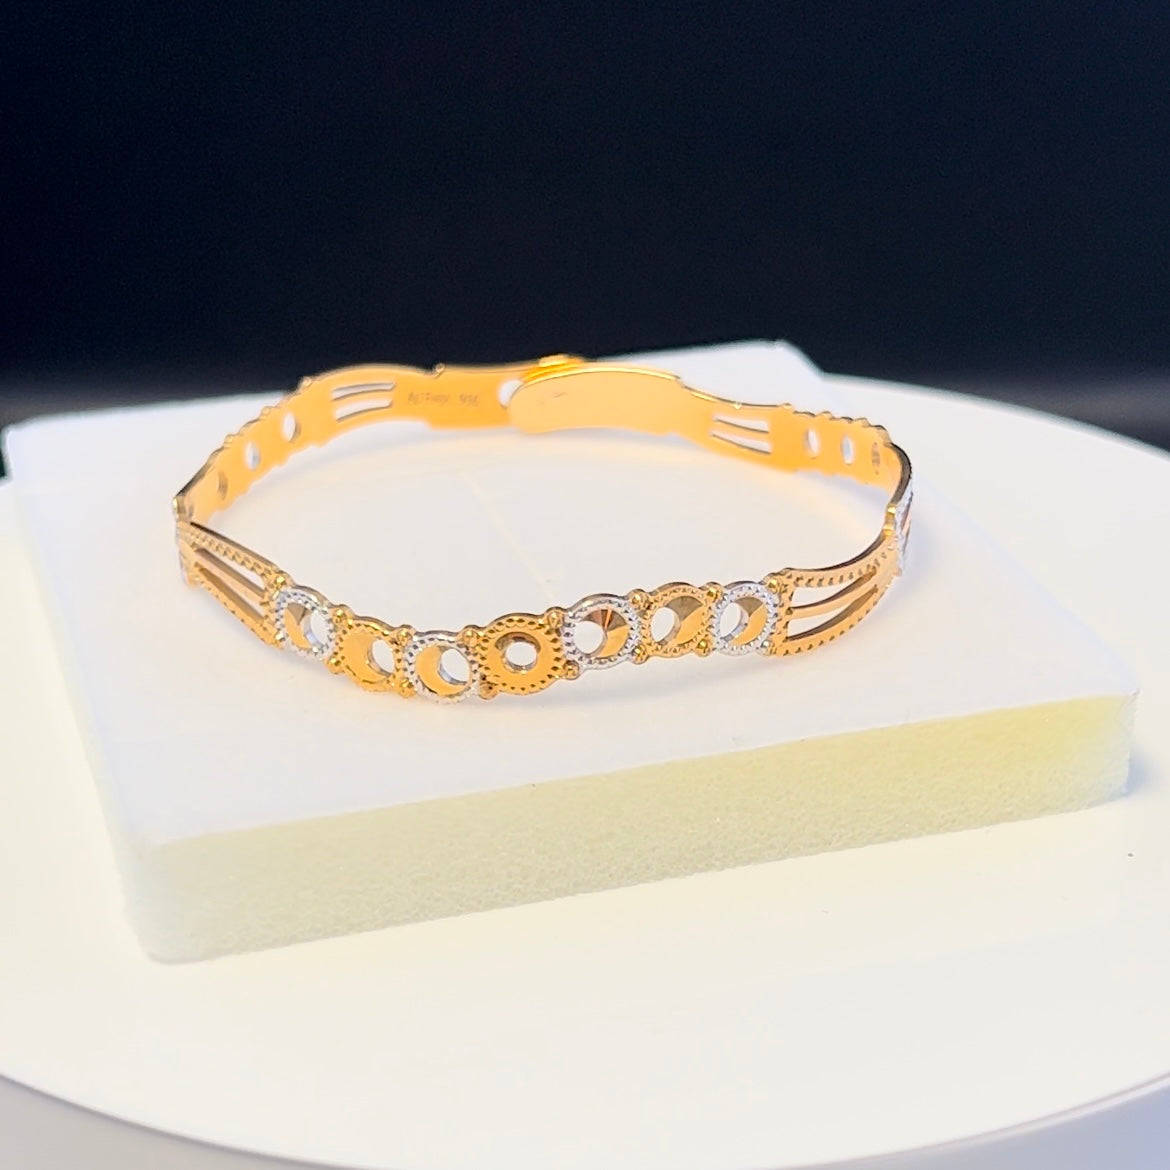 Elegant Gold & Rhodium Cuff Bracelet